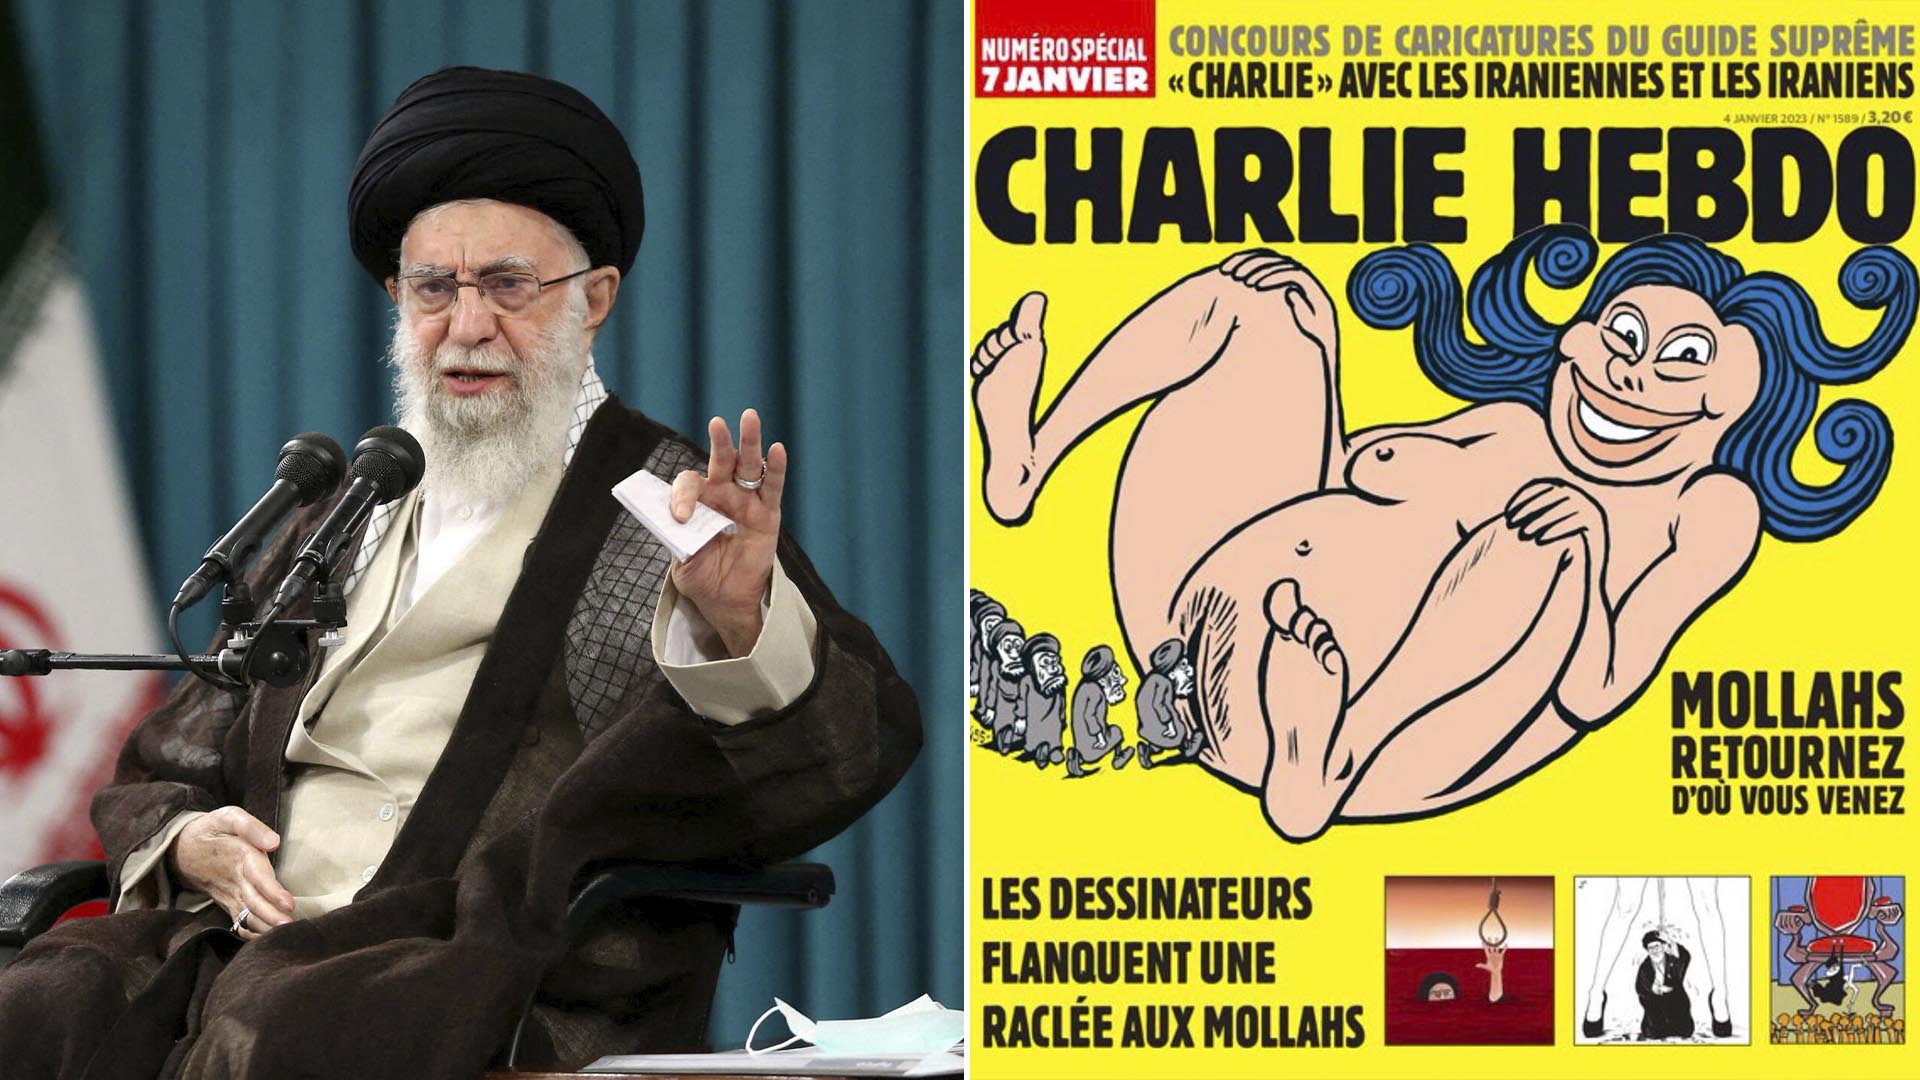 Las caricaturas sobre el ayatollah Khamenei que publicó Charlie Hebdo y  enfurecieron al régimen de Irán - Infobae